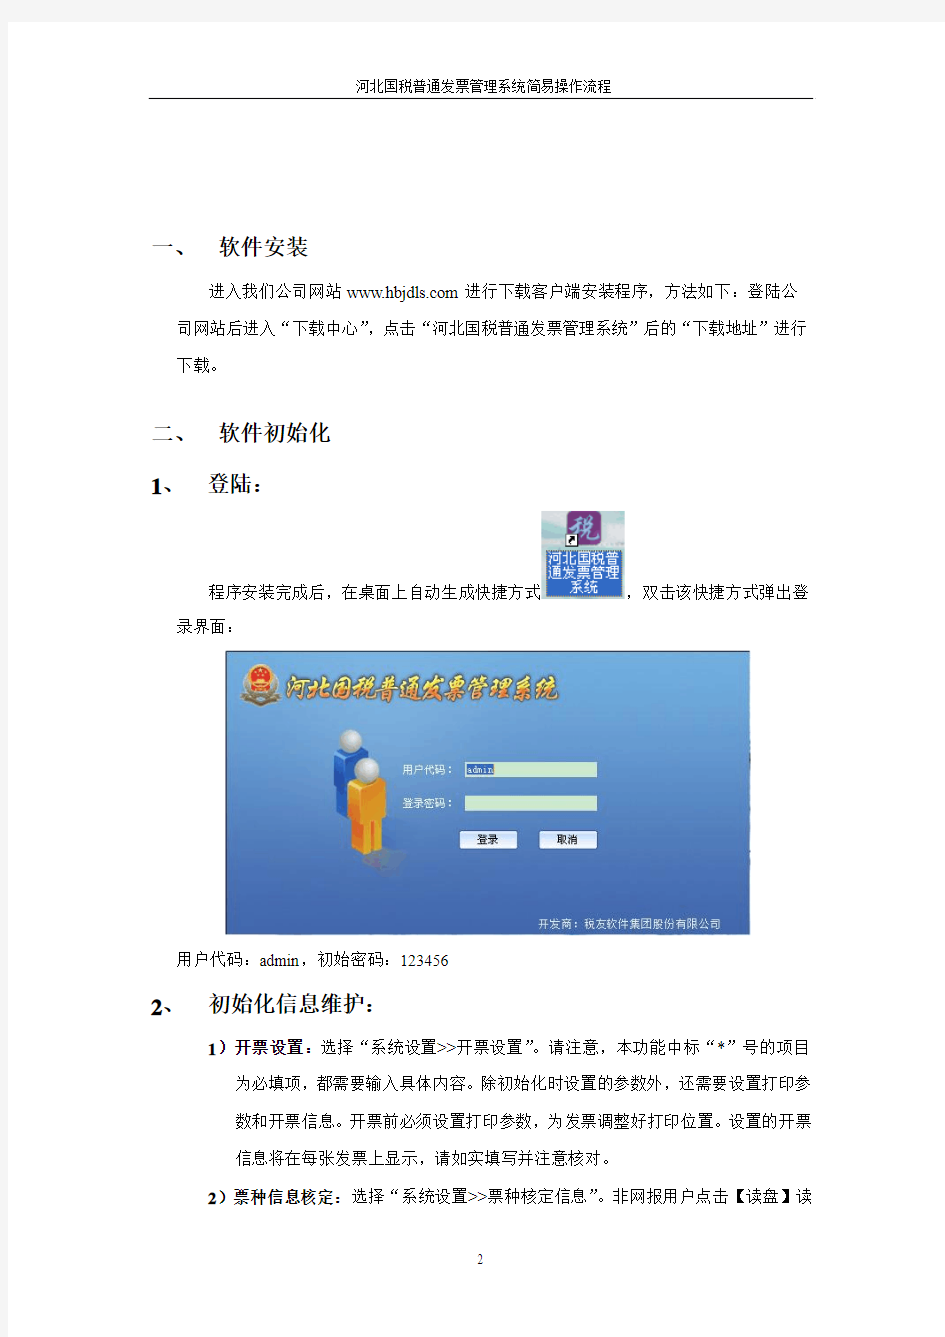 河北国税普通发票管理系统(1)